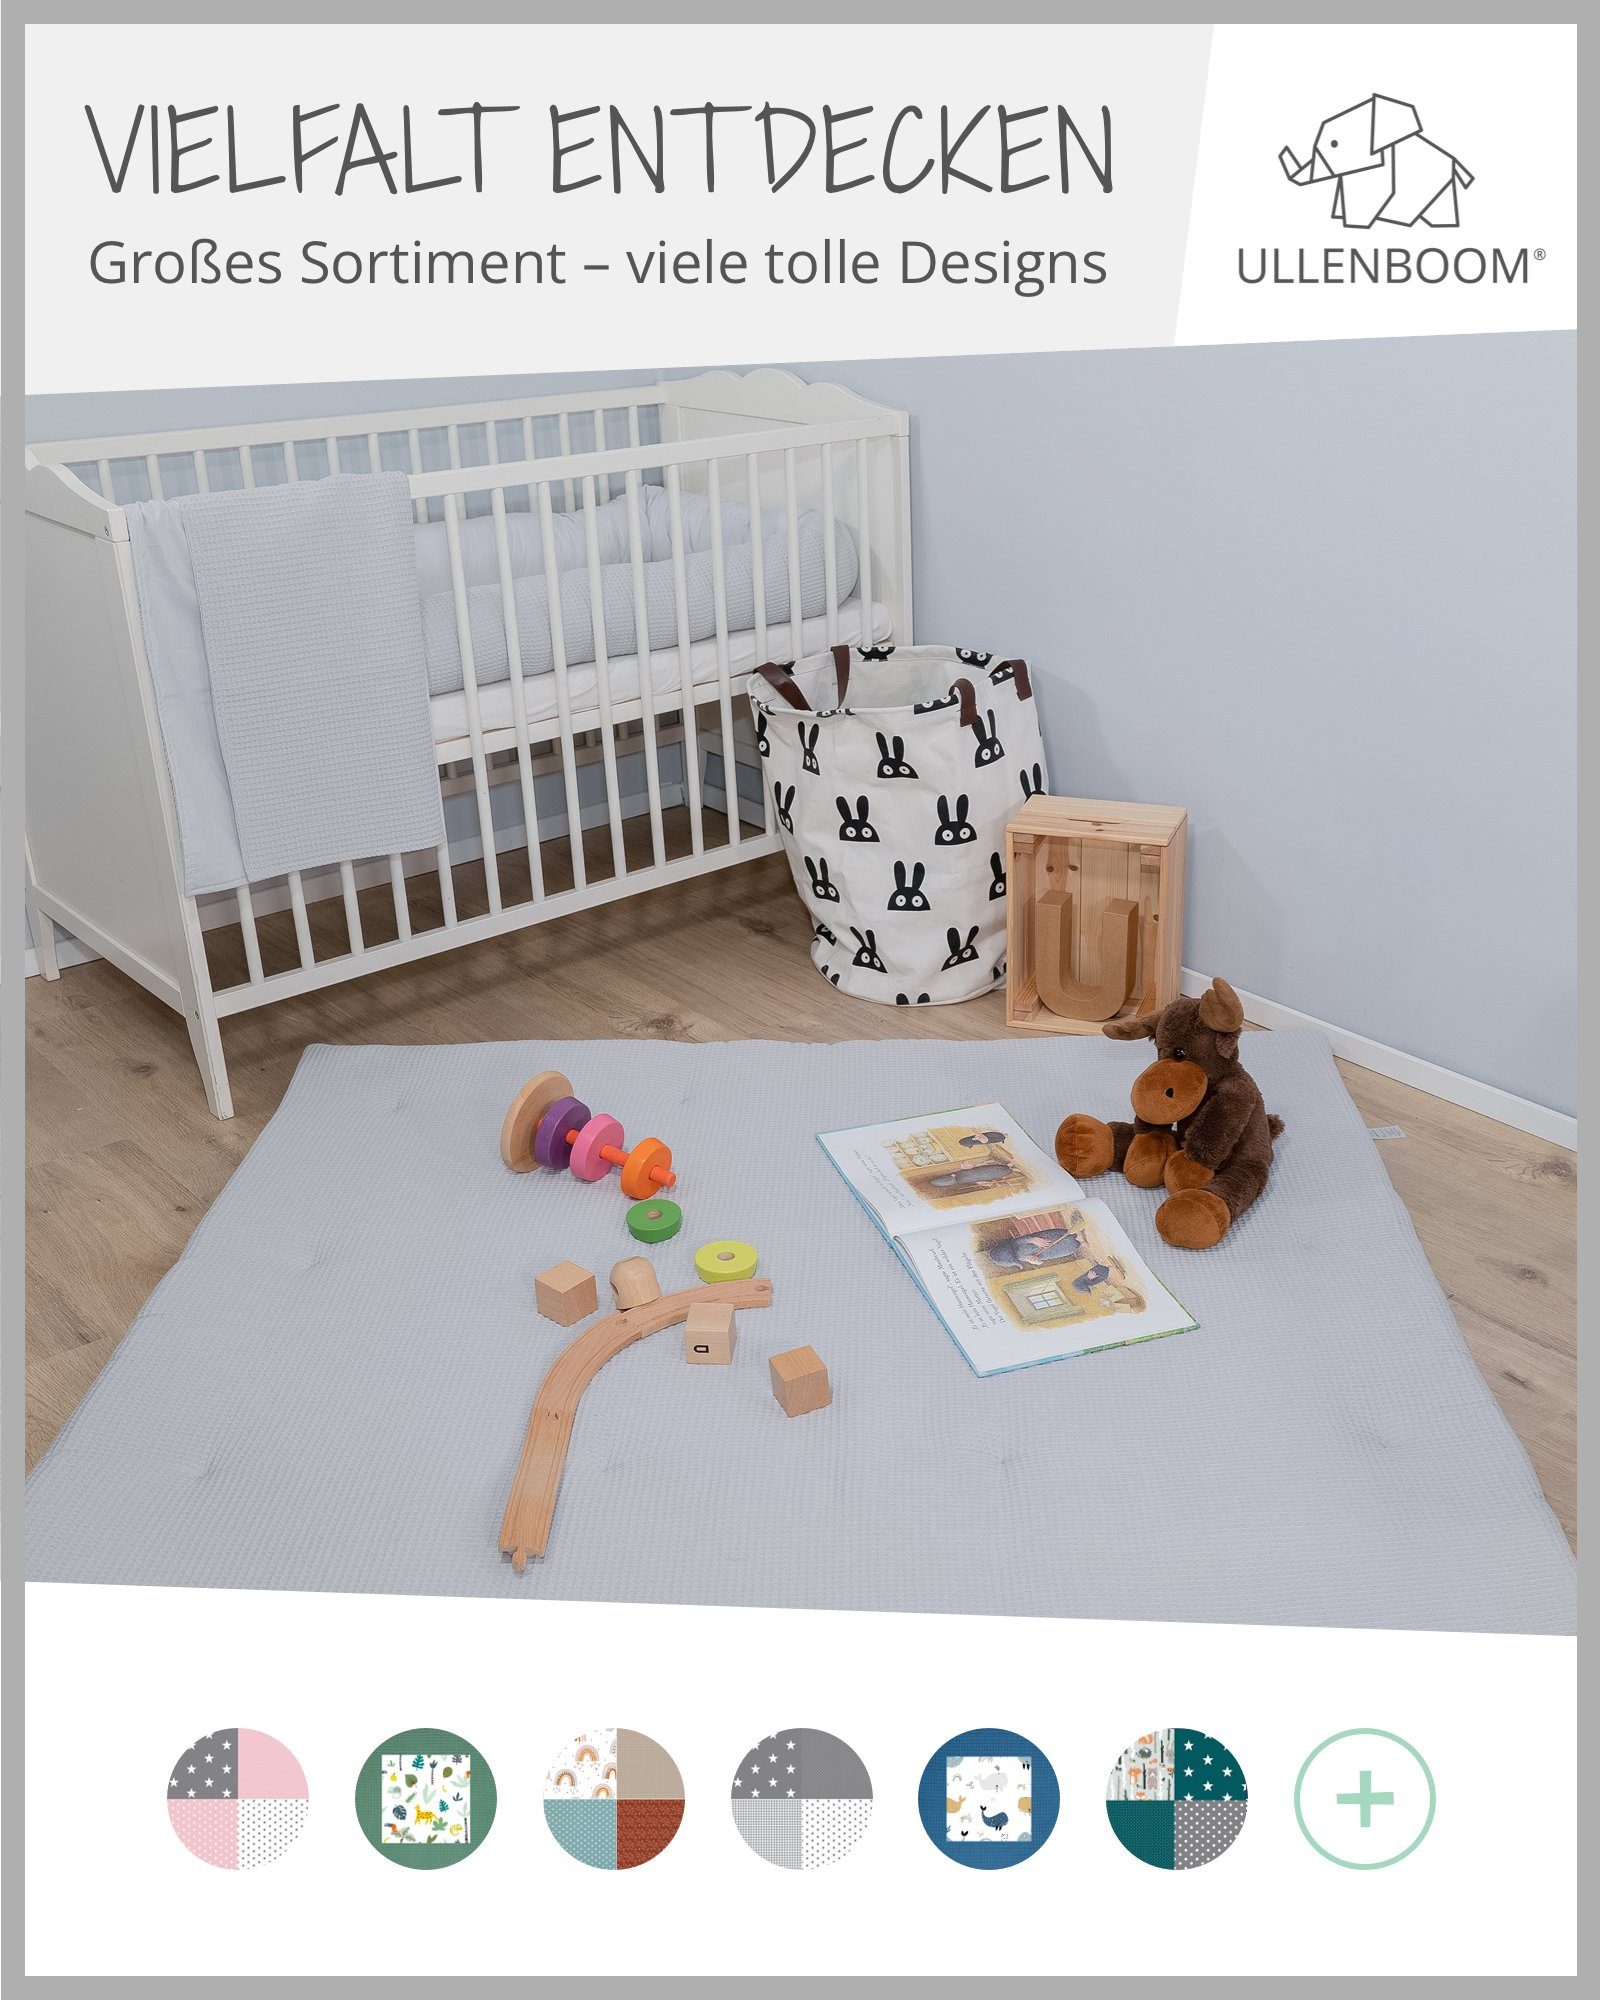 & in Grau in EU, Aus Made ULLENBOOM ®, EU), Spieldecke Uni Kinderwagendecke als 70x100 (Made Babydecke Baumwolle, hochwertiger Babydecke cm Design: